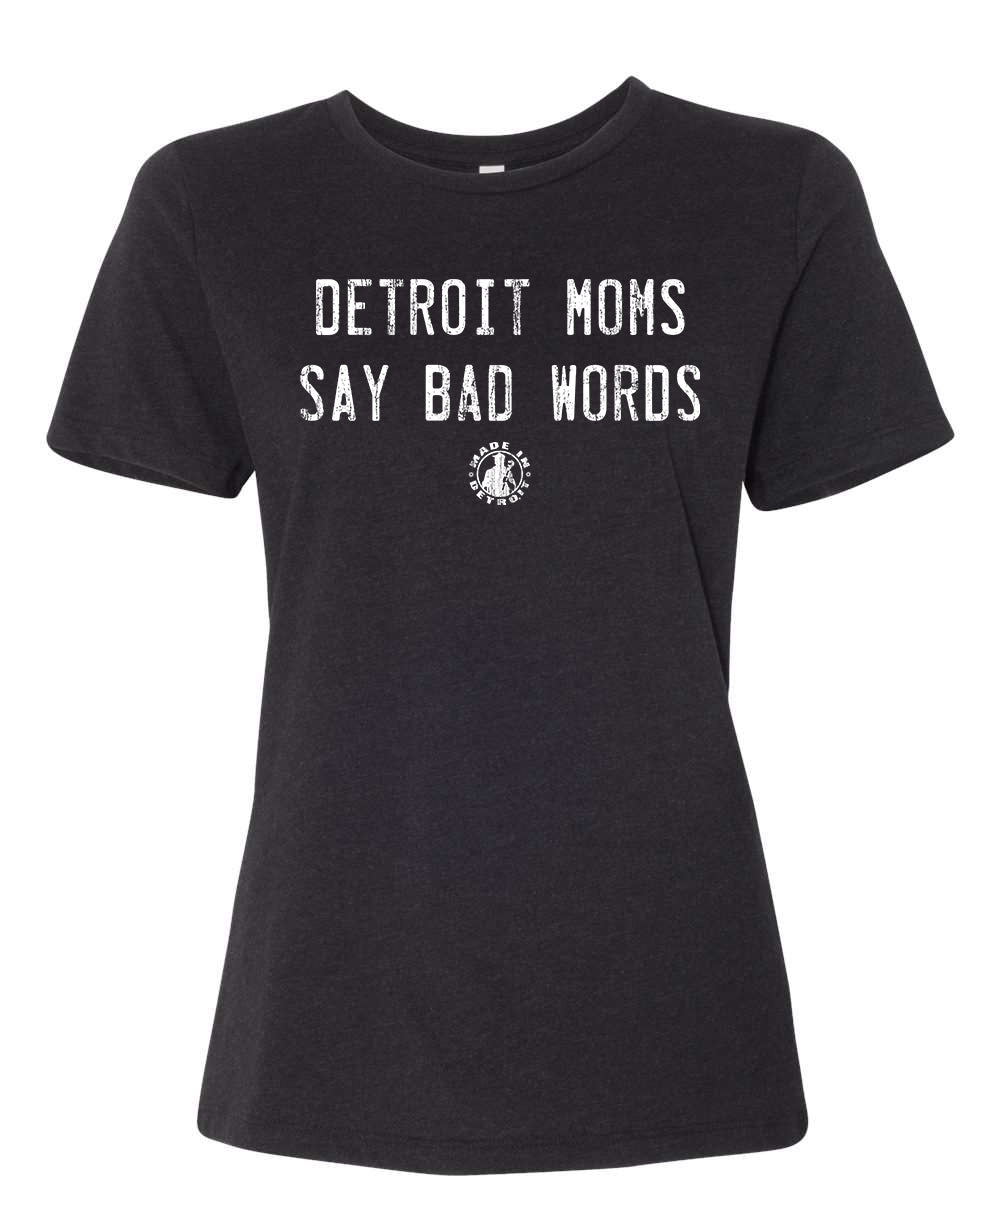 Detroit Moms Crew Colors